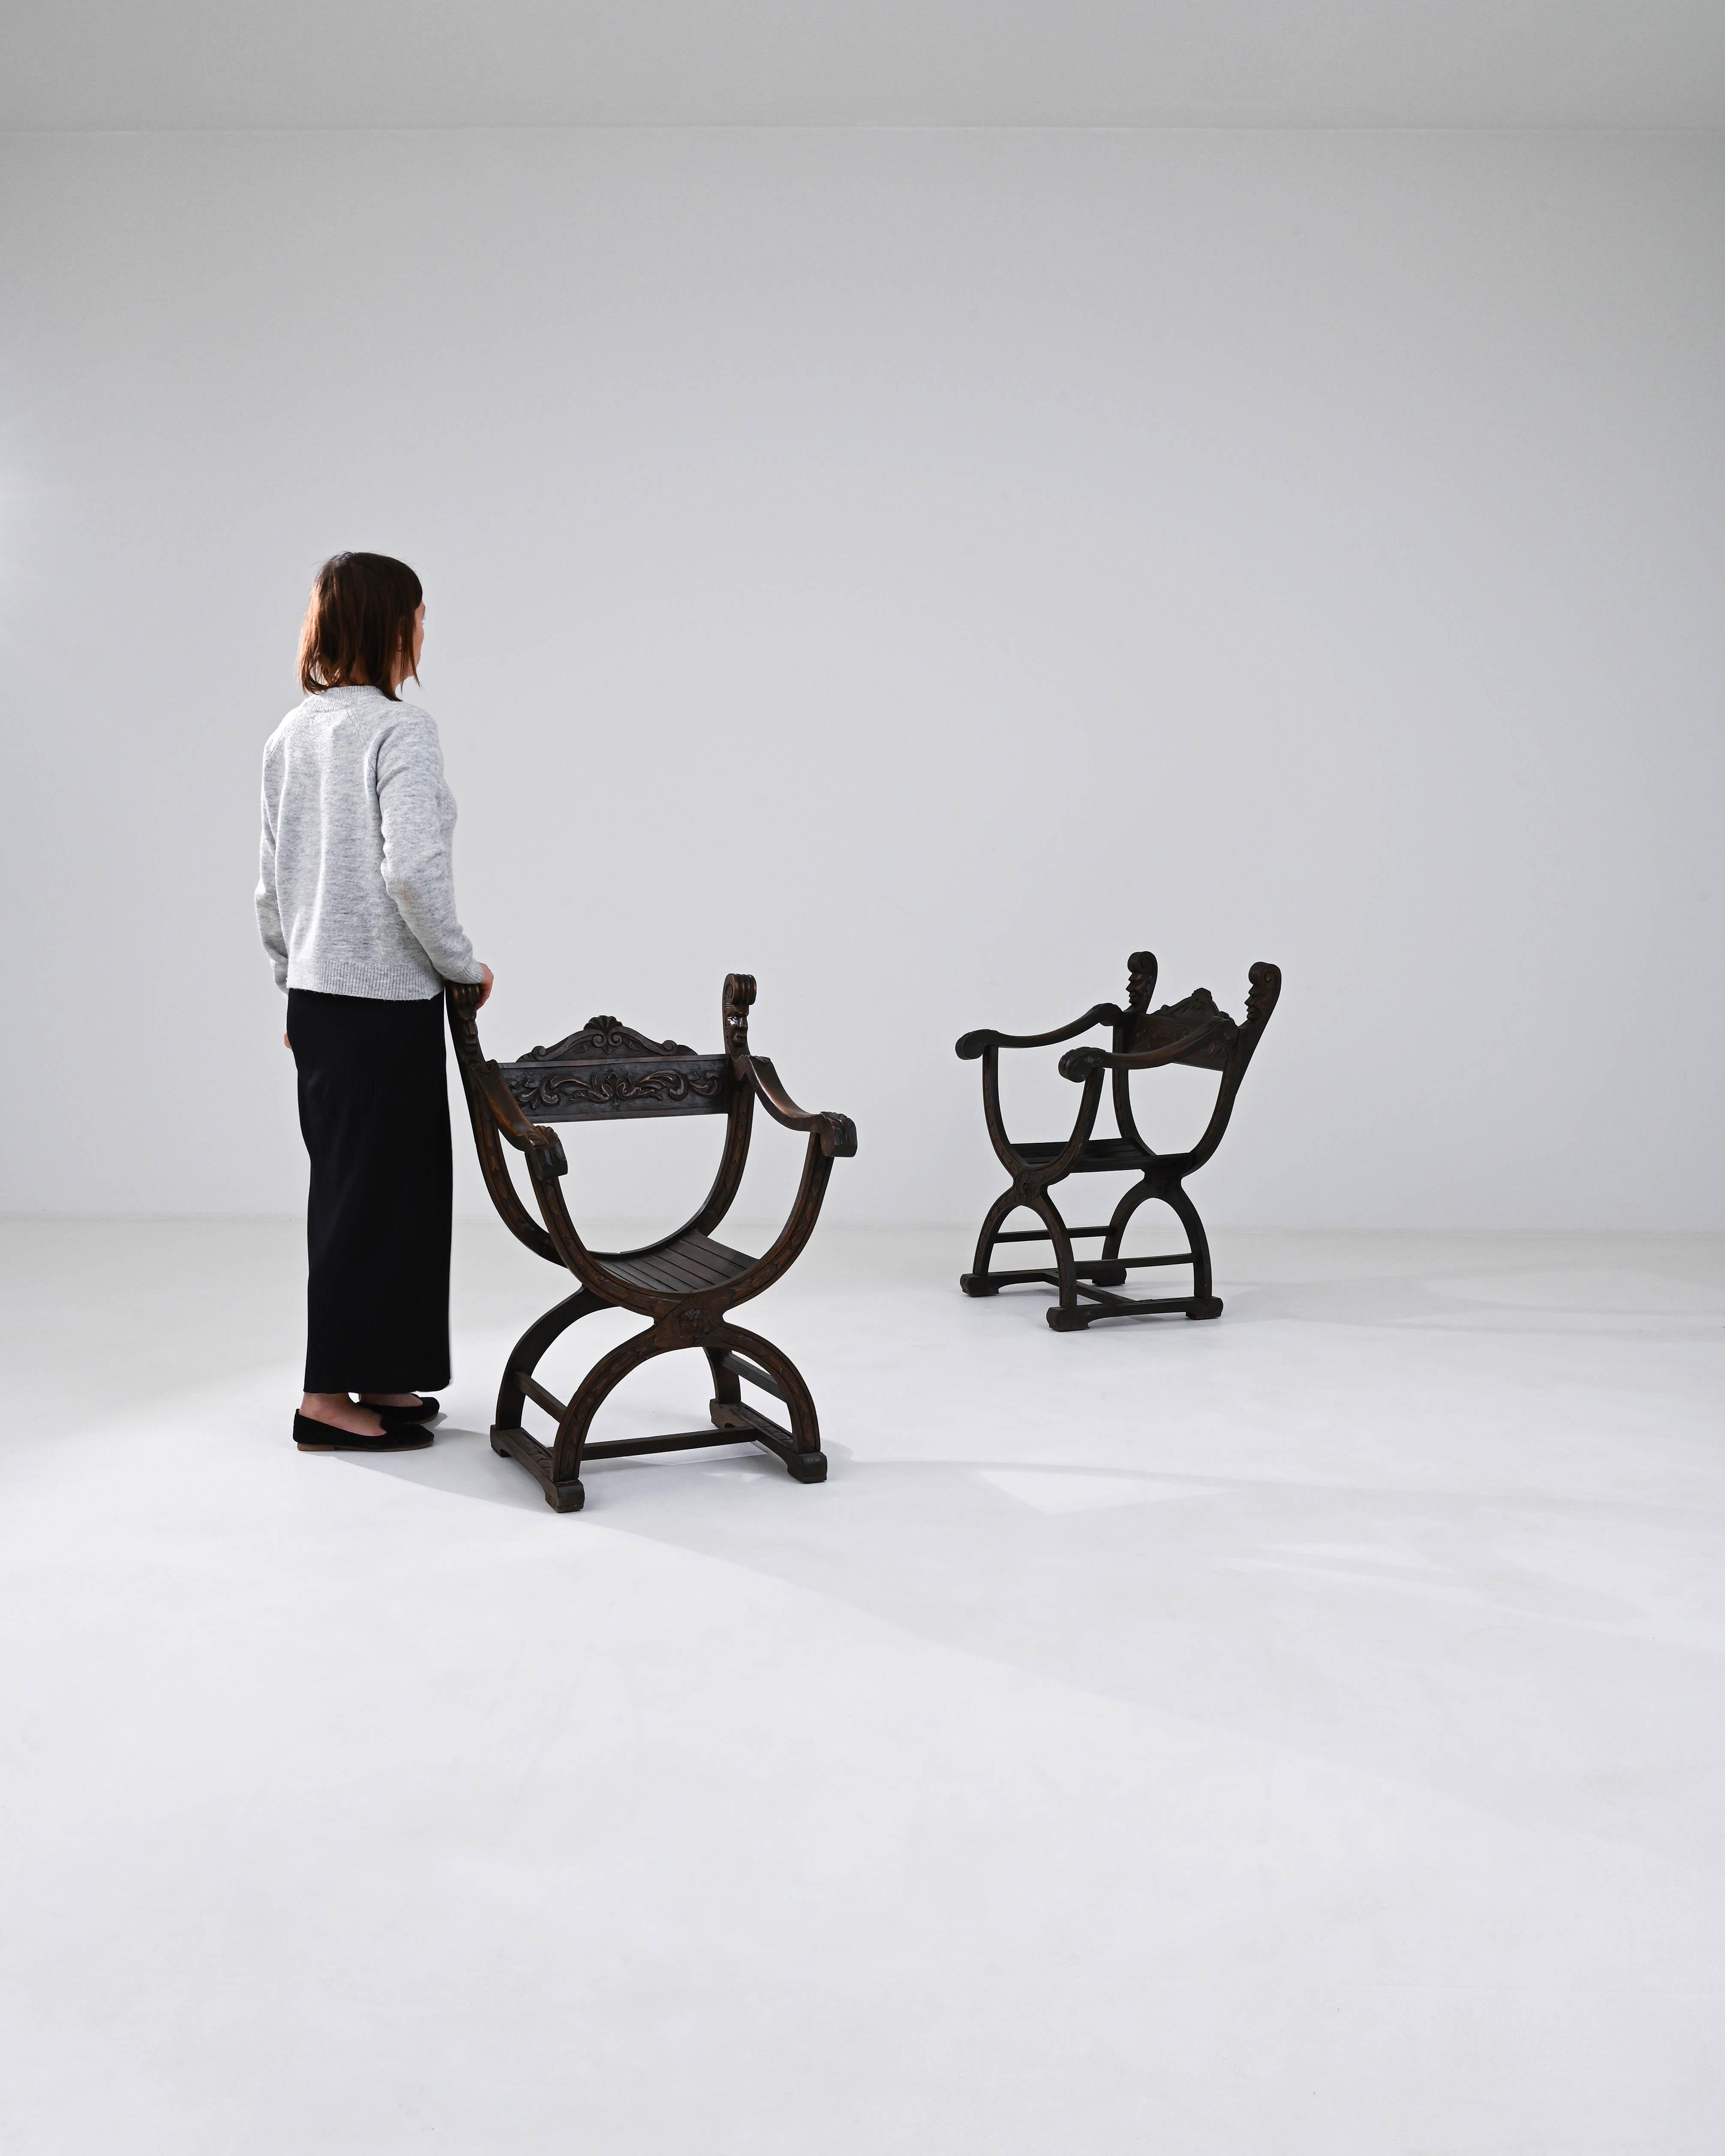 Découvrez la grandeur discrète de cette paire de fauteuils en bois belge du XXe siècle, un duo qui respire l'élégance classique et le charme robuste. Les chaises sont une symphonie de bois sombre et poli, avec des courbes et des arcs qui évoquent